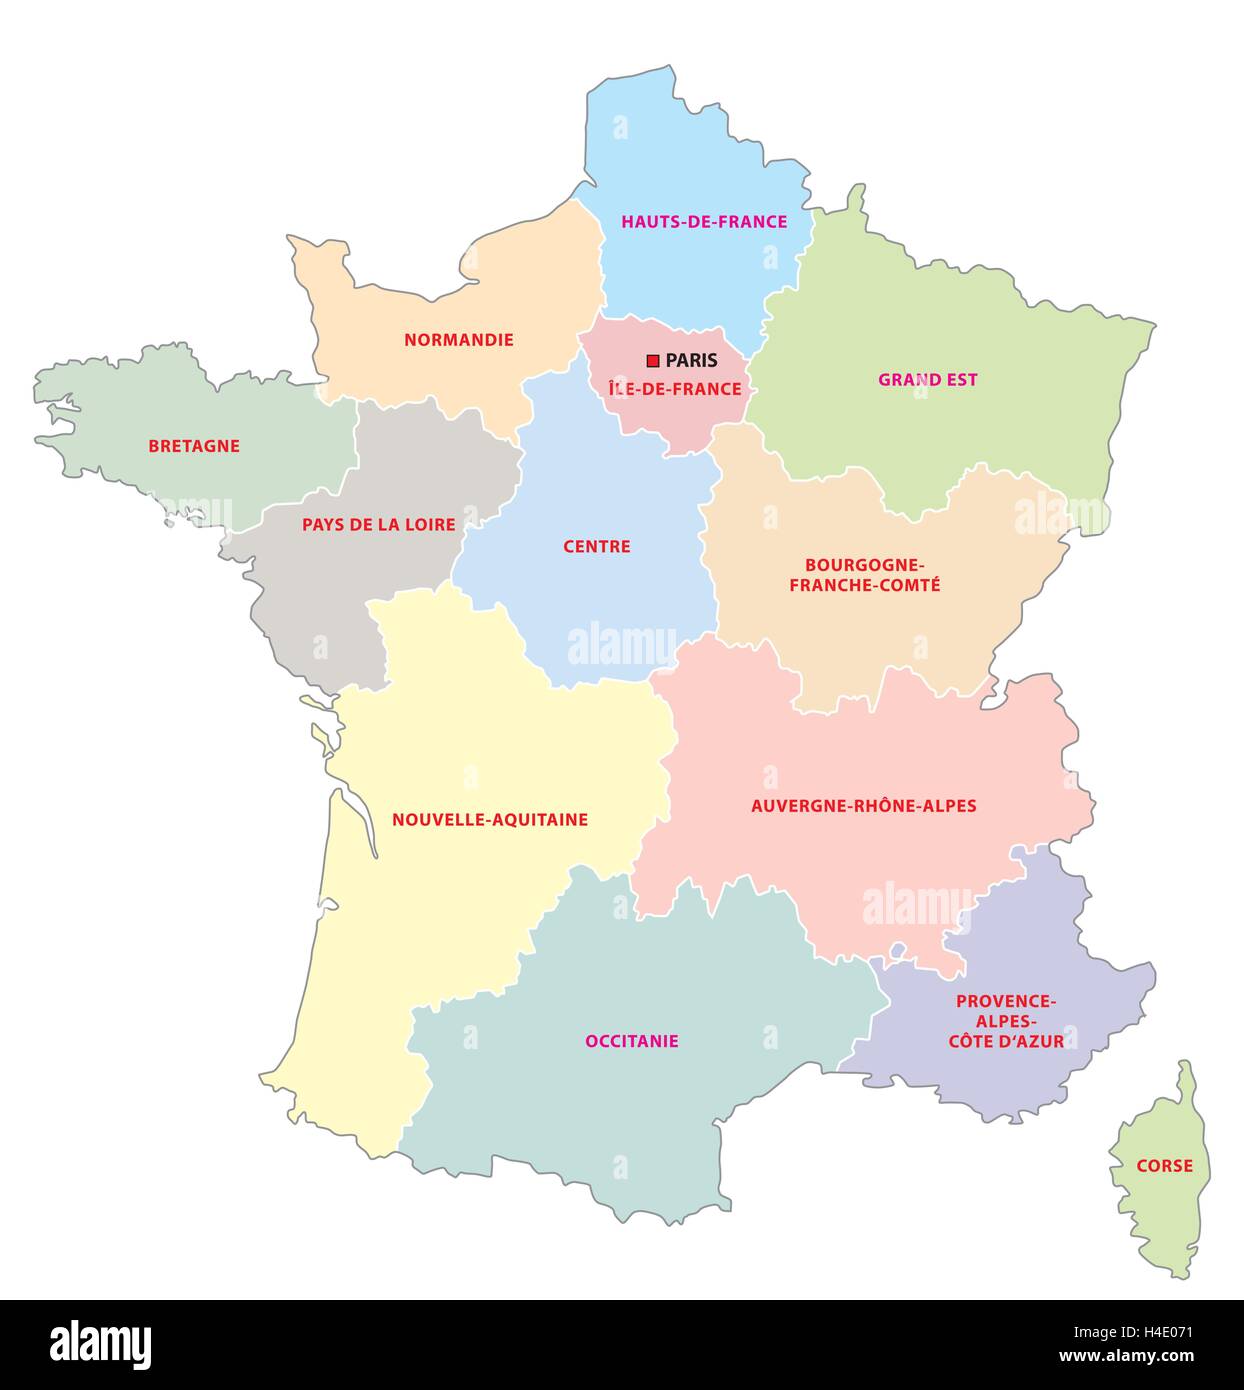 Carte administrative des 13 régions de France depuis 2016 Image Vectorielle  Stock - Alamy